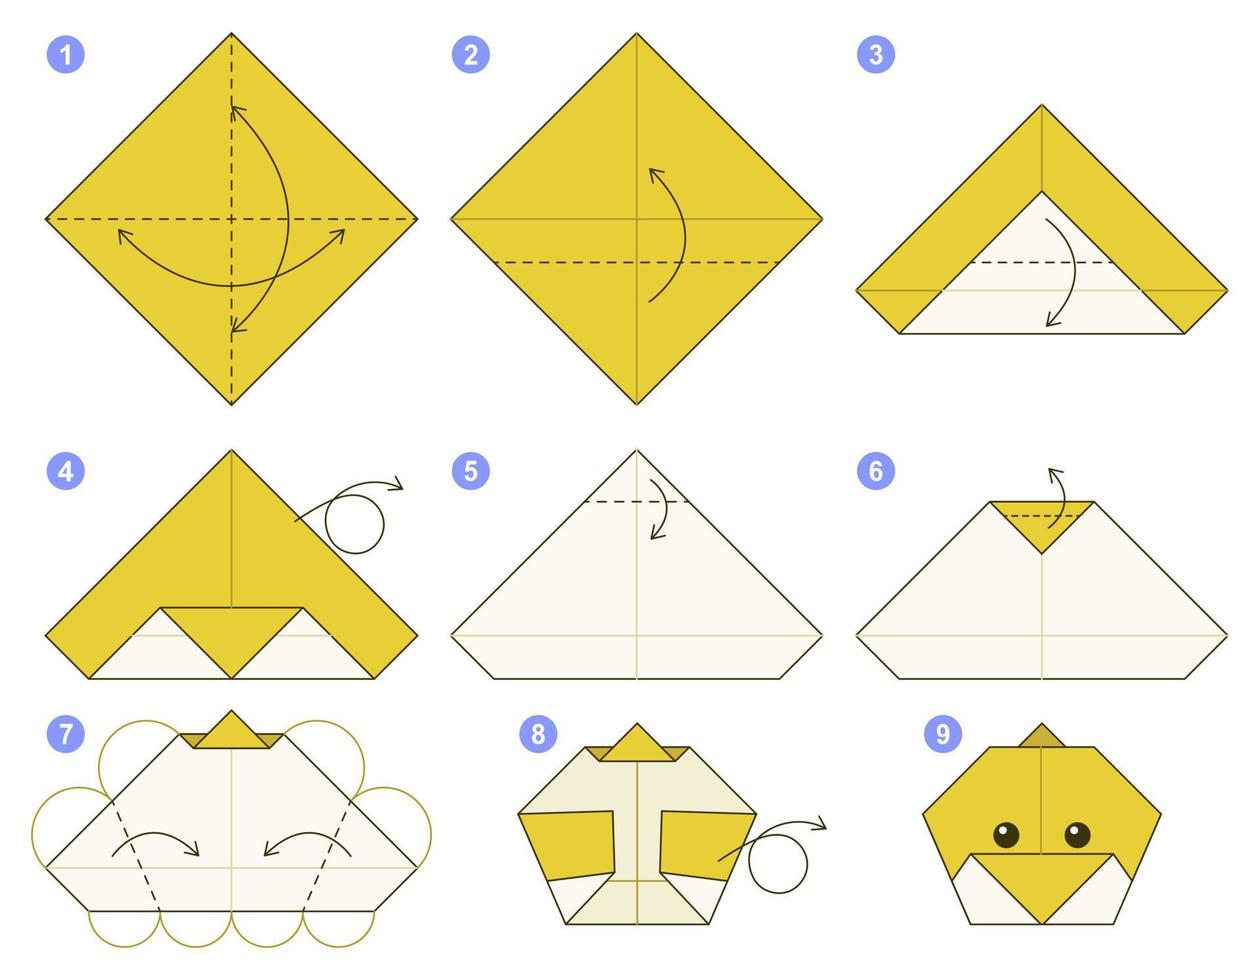 modelo de movimento tutorial de esquema de origami de pintinho. origami para crianças. passo a passo como fazer um pintinho de origami fofo. ilustração vetorial. vetor